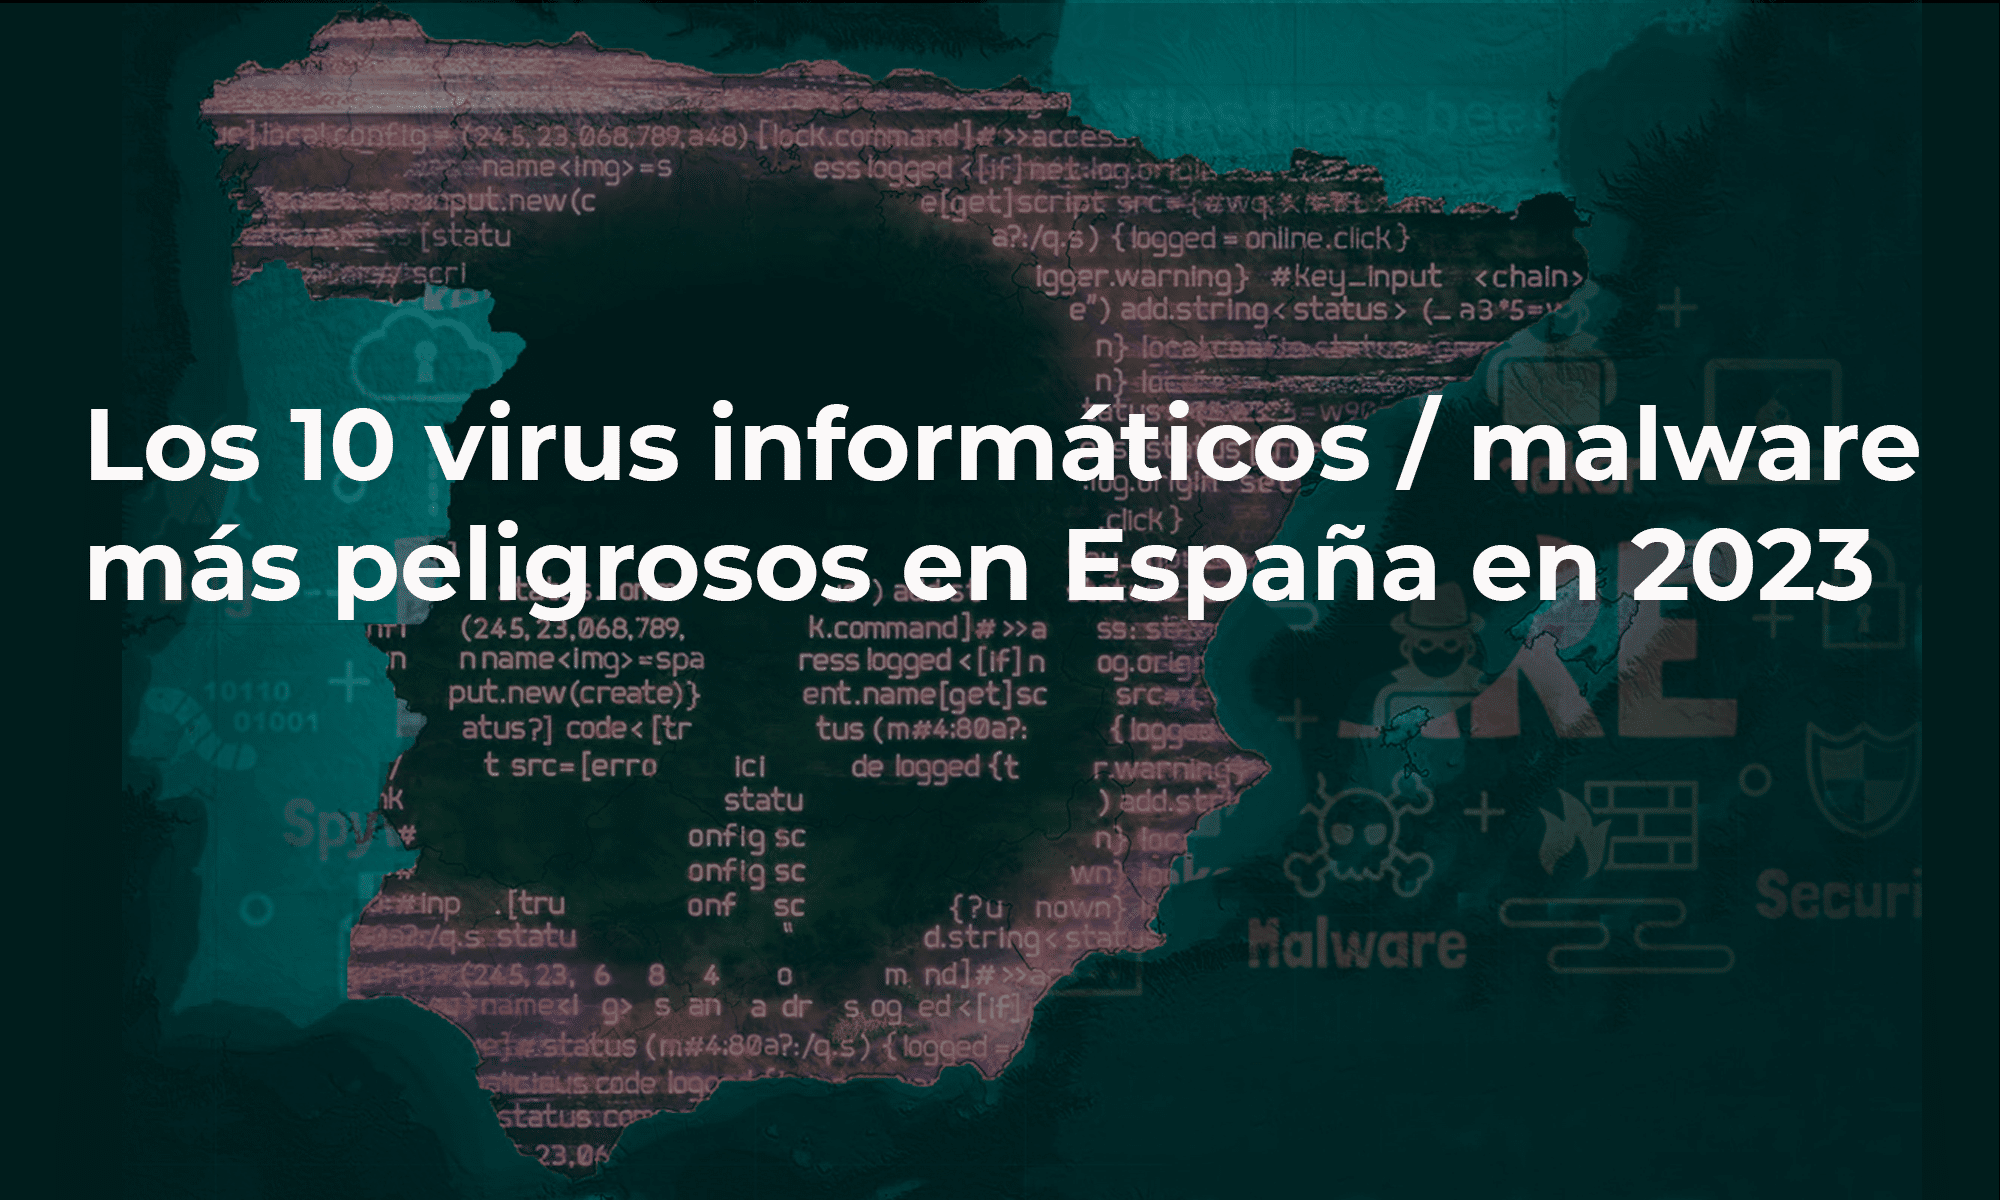 Los 10 virus informáticos malware más peligrosos en España en 2023